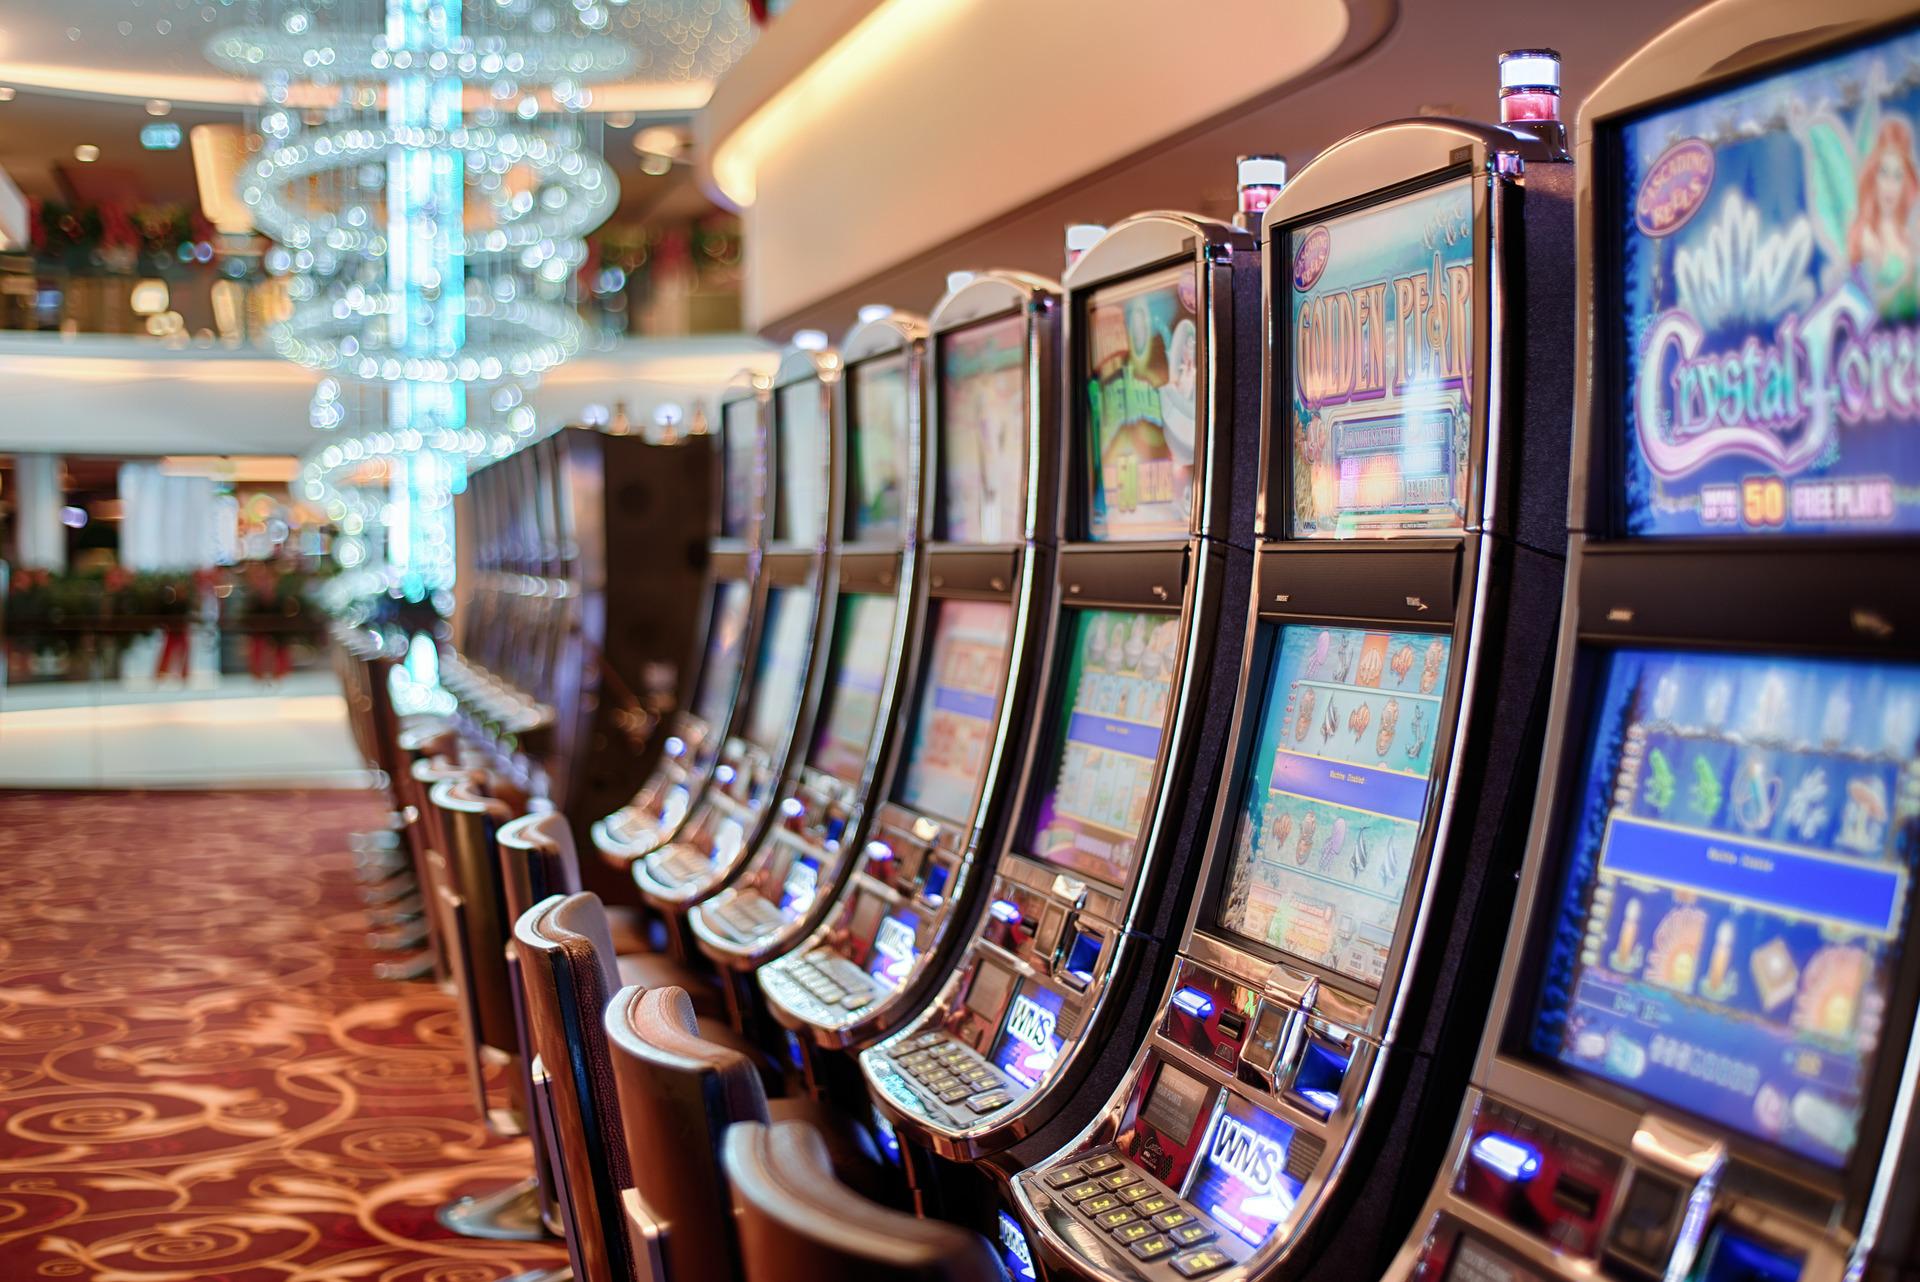 Progressive Slot Machines